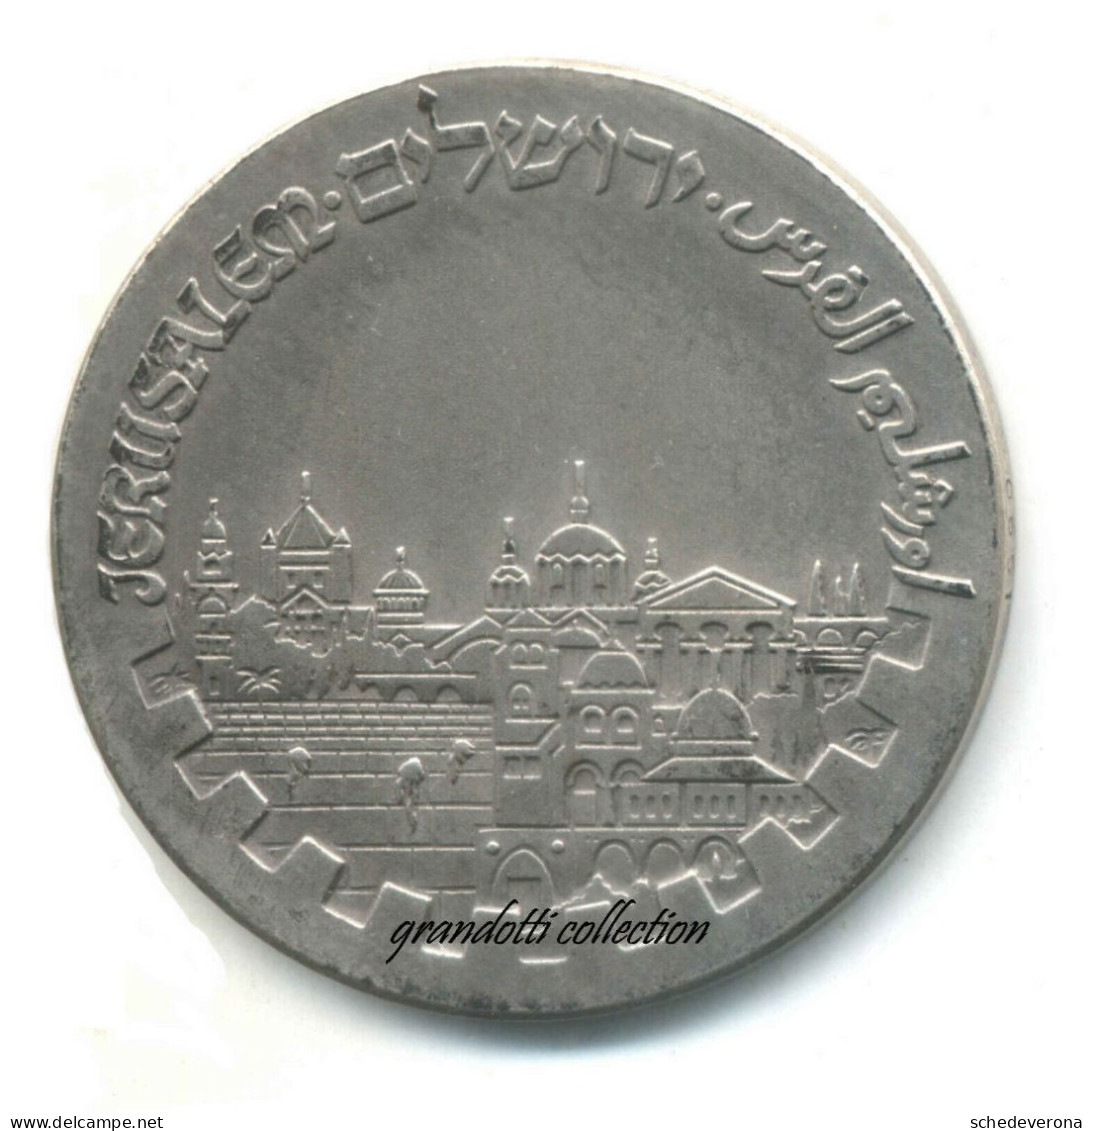 ROTARY GIUBILEO GERUSALEMME 1979 MEDAGLIA ISRAELE ARGENTO JERUSALEM JUBILEE - Gewerbliche